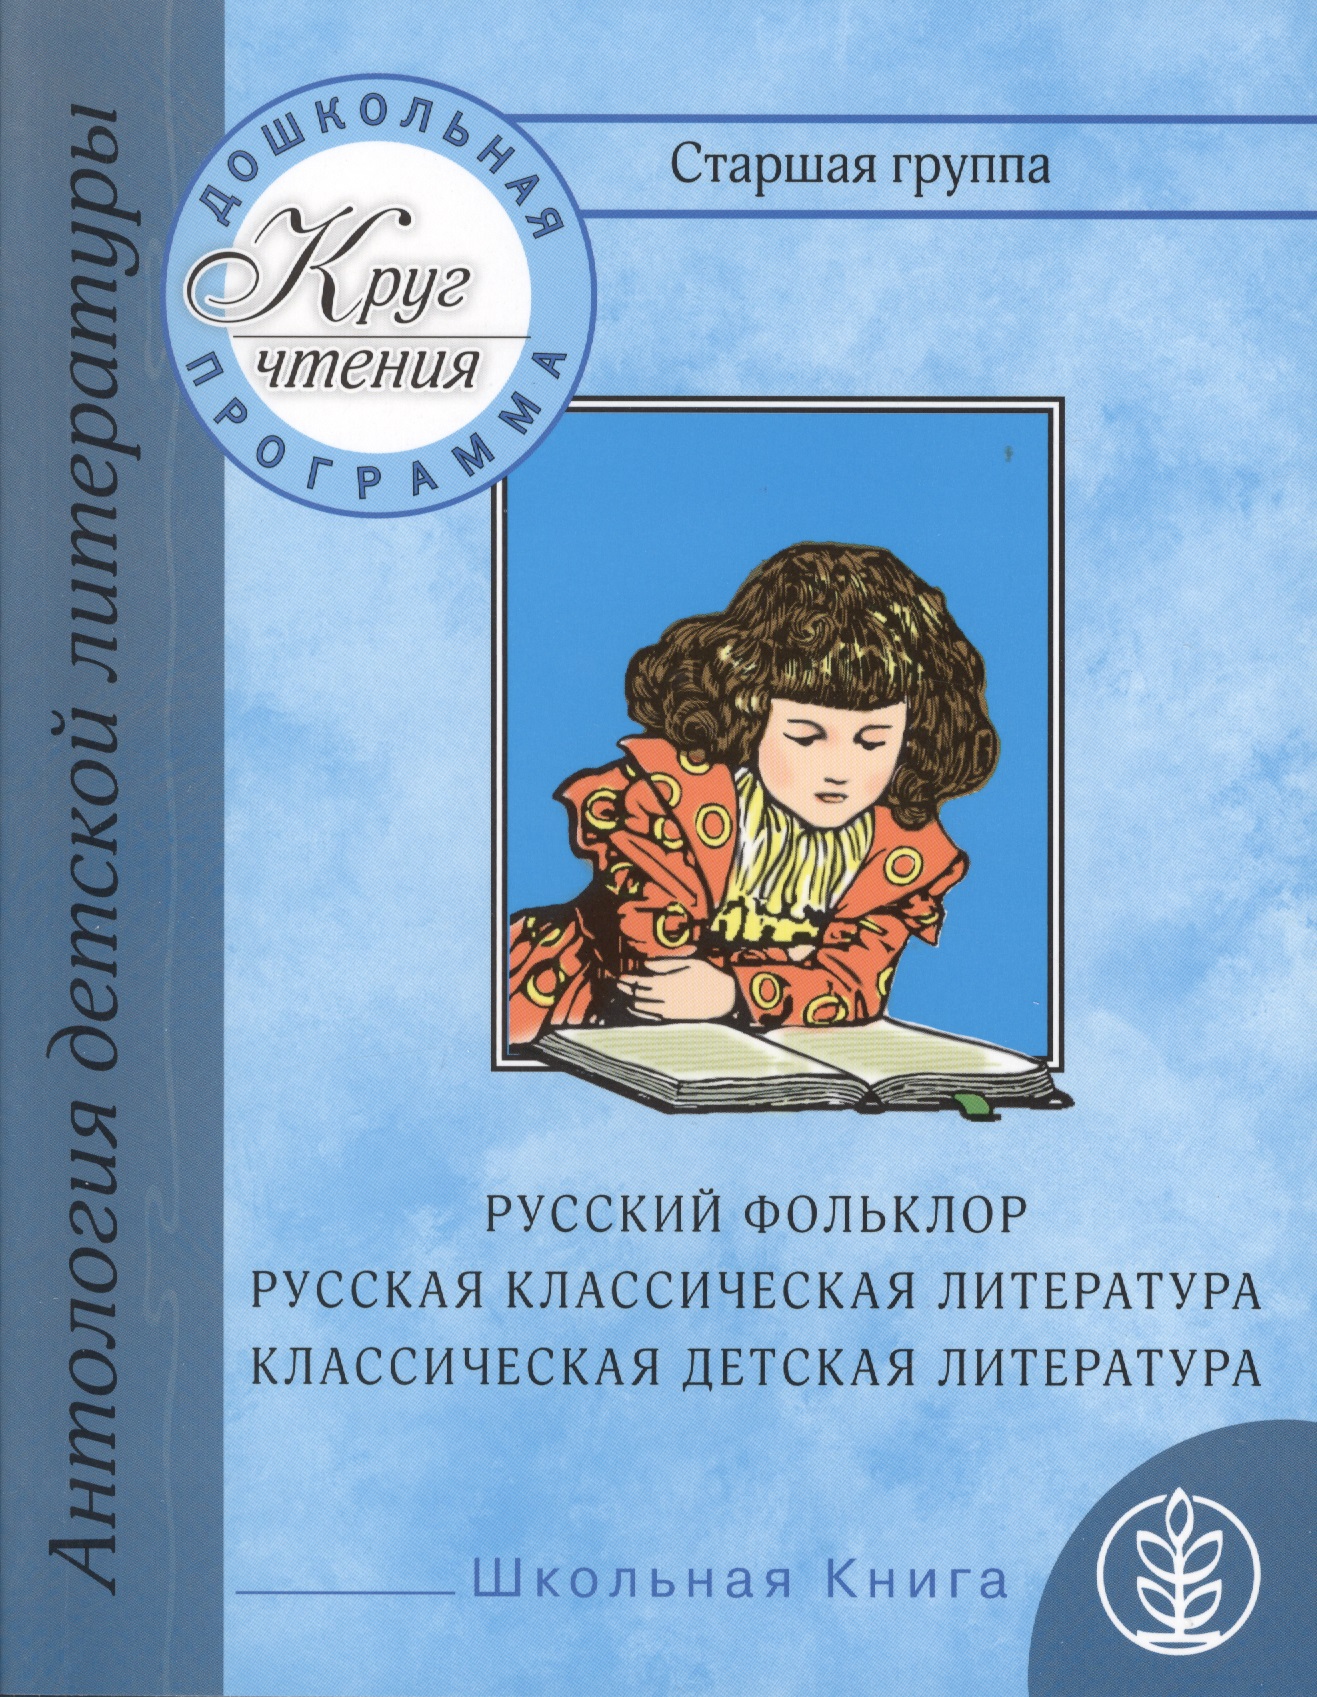 Дошкольная программа. Старшая группа: антология детской литературы. Русский фольклор, русская классическая и классическая детская литература